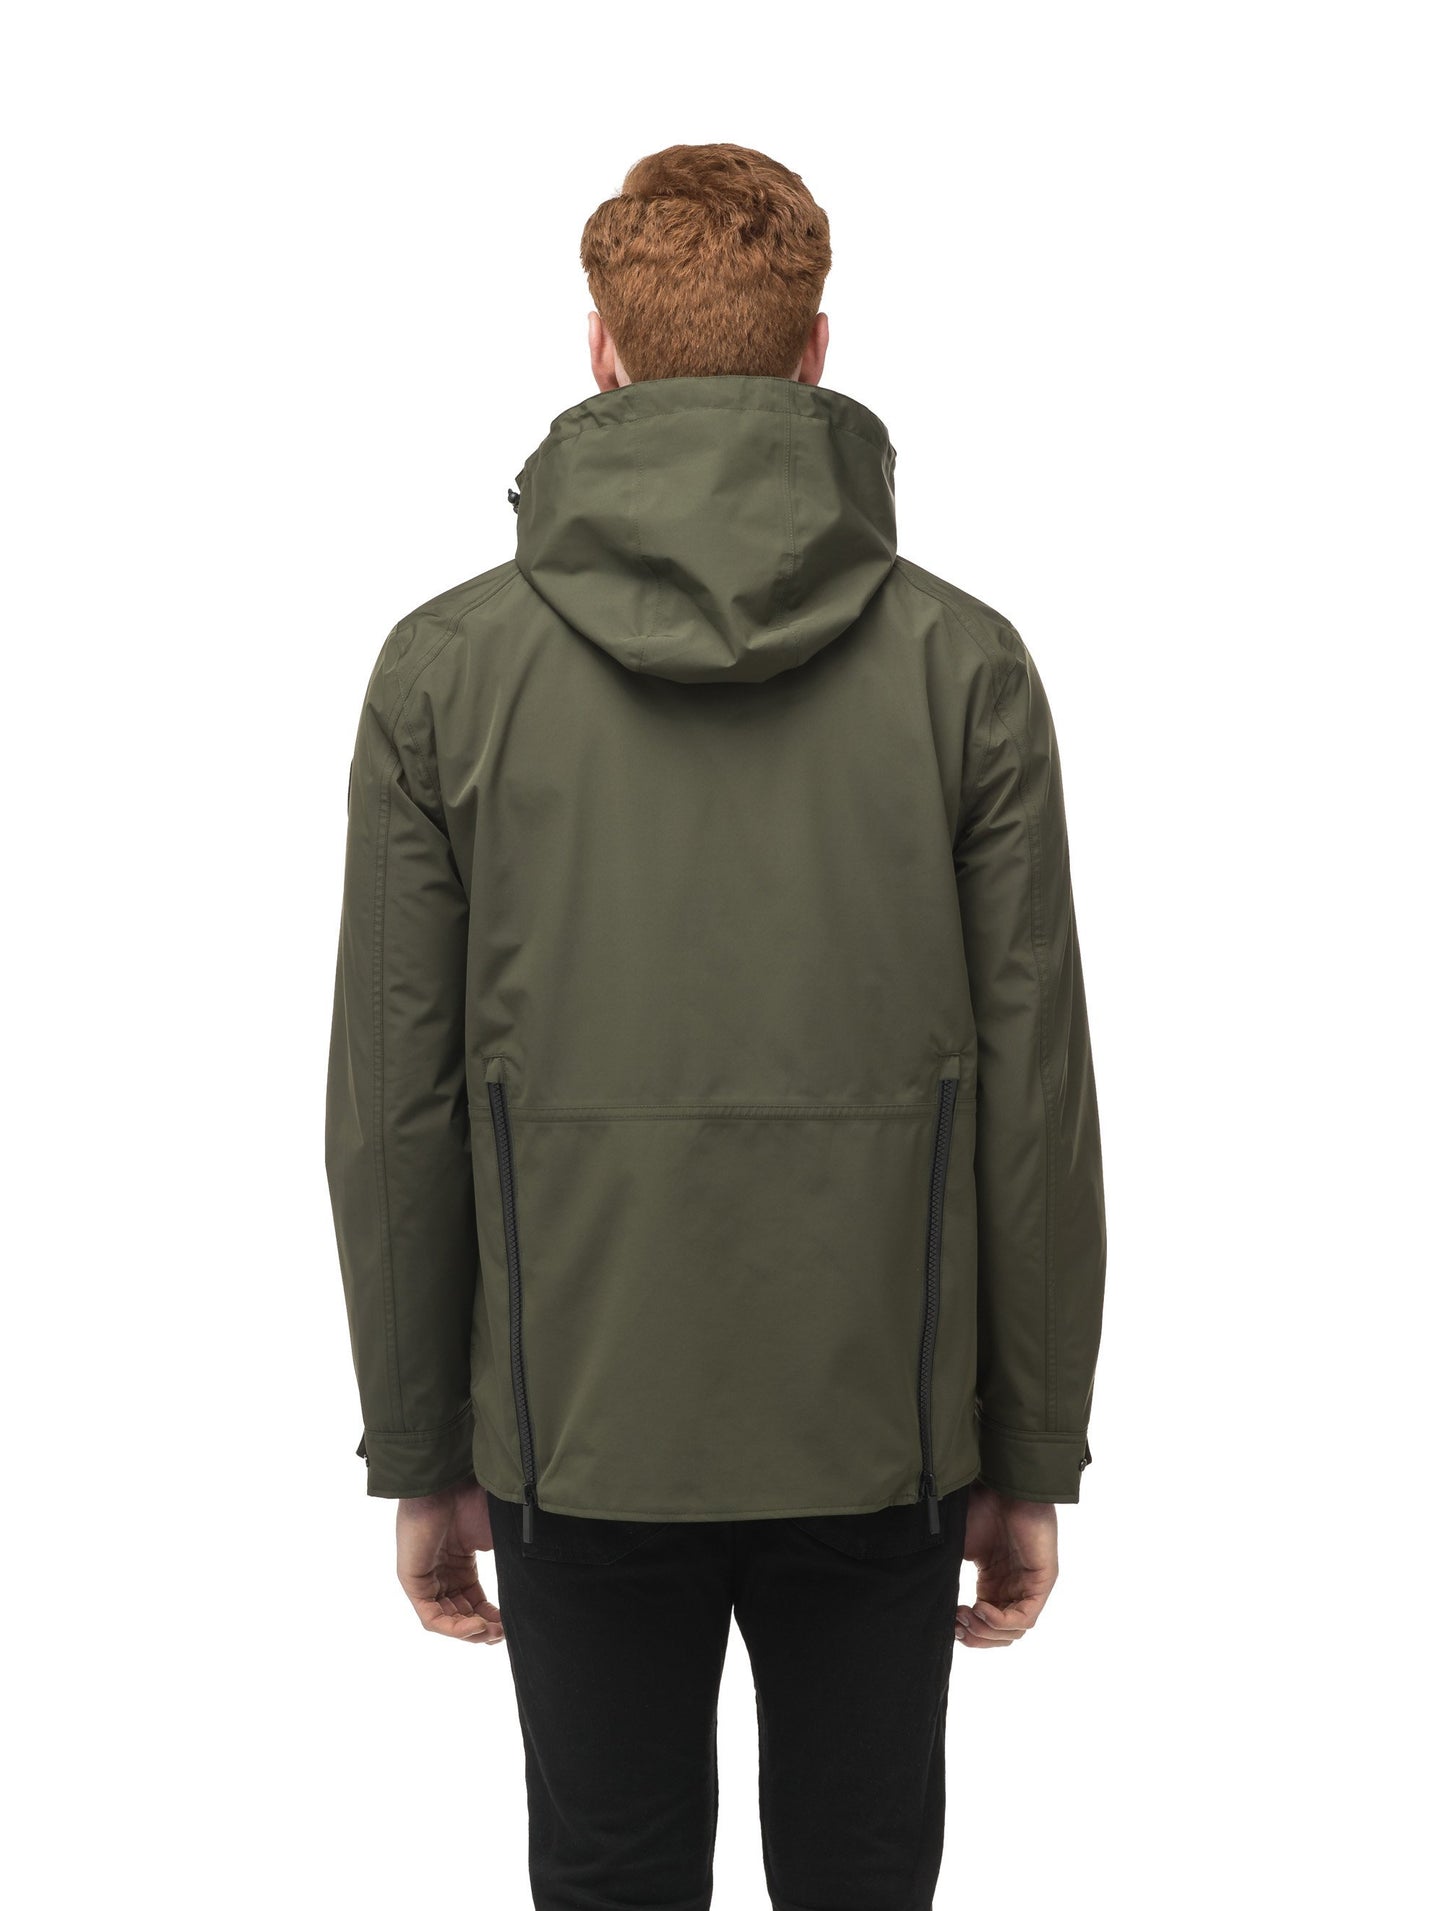 Men's waist length waterproof jacket with exposed zipper in Fatigue